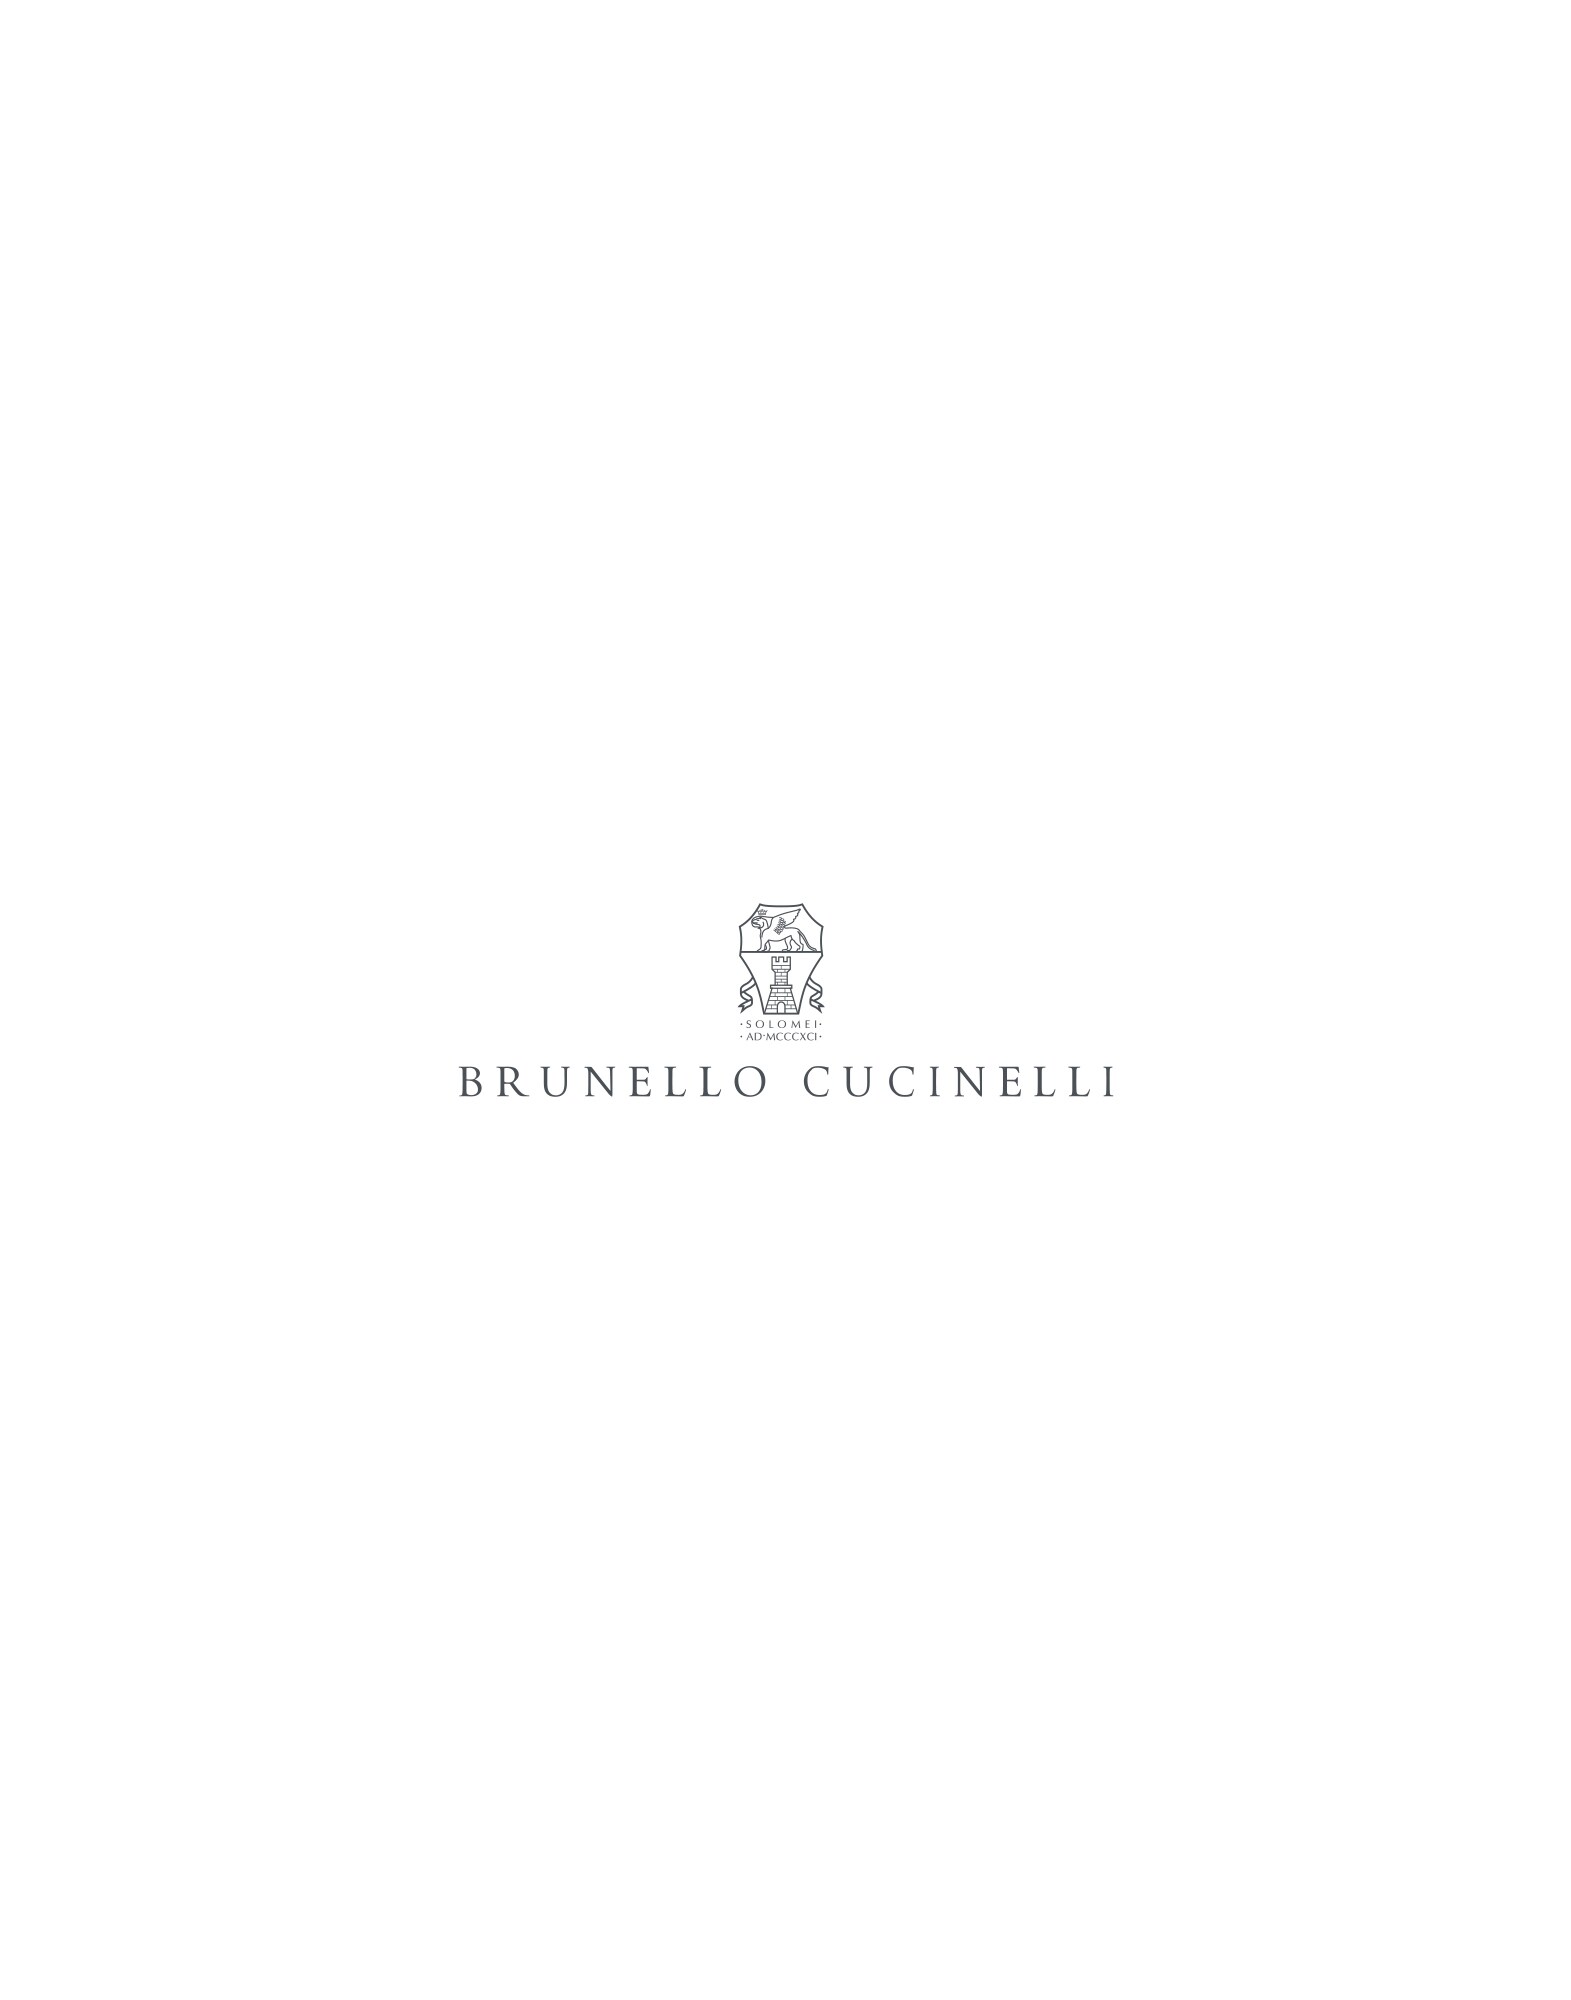 Mr. Brunello avec verres photochromiques Havane Lunettes - Brunello Cucinelli